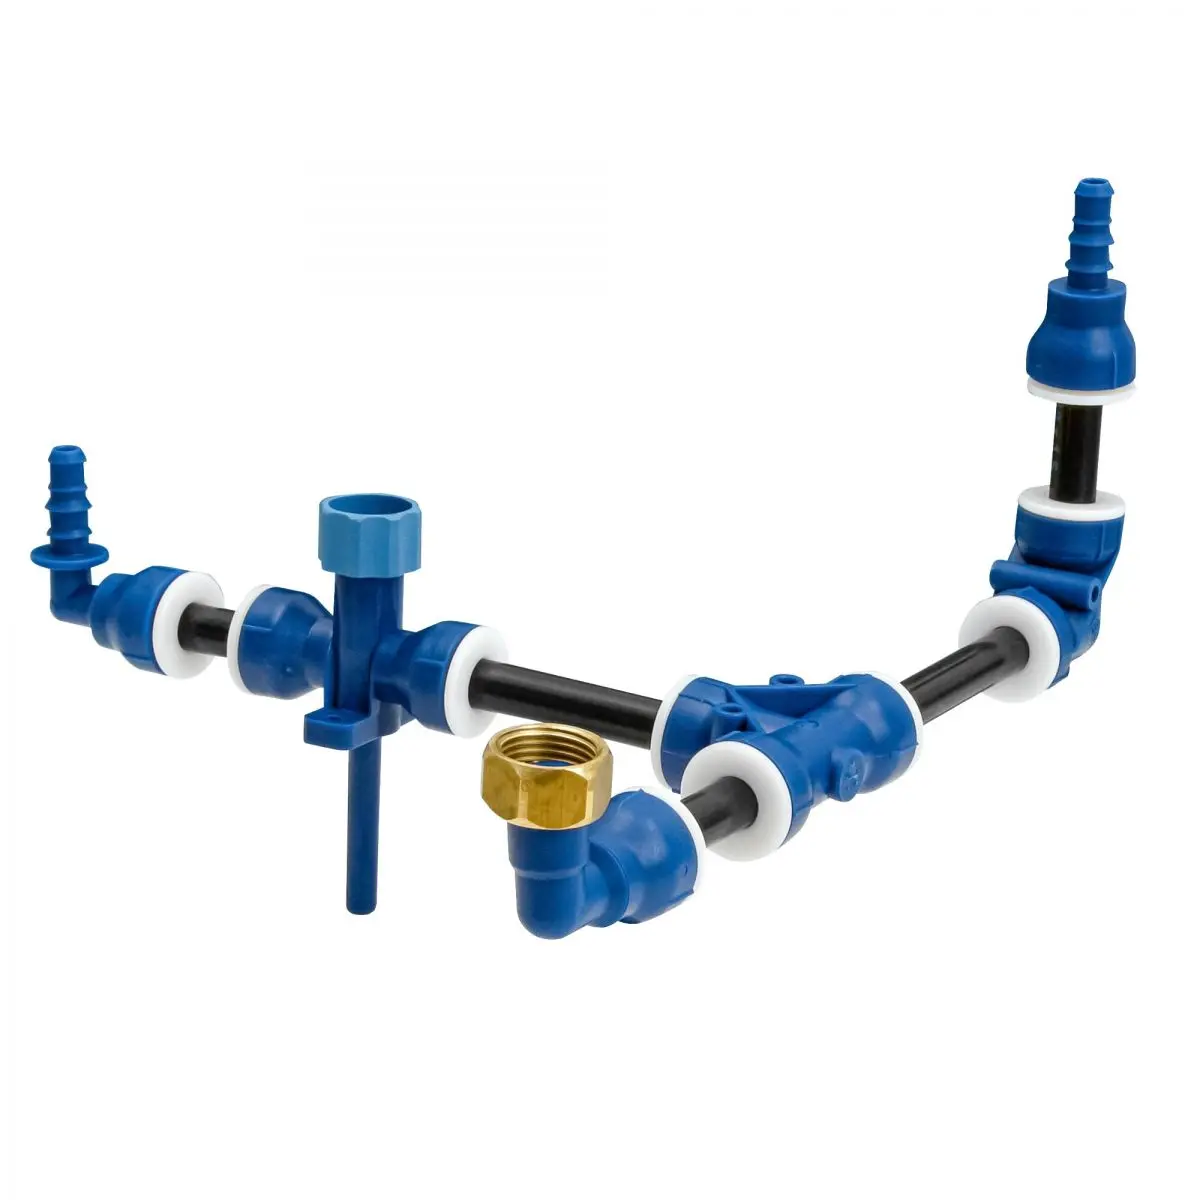 priamy konektor 14 12 mm - Uniquick systém čerstvej vody